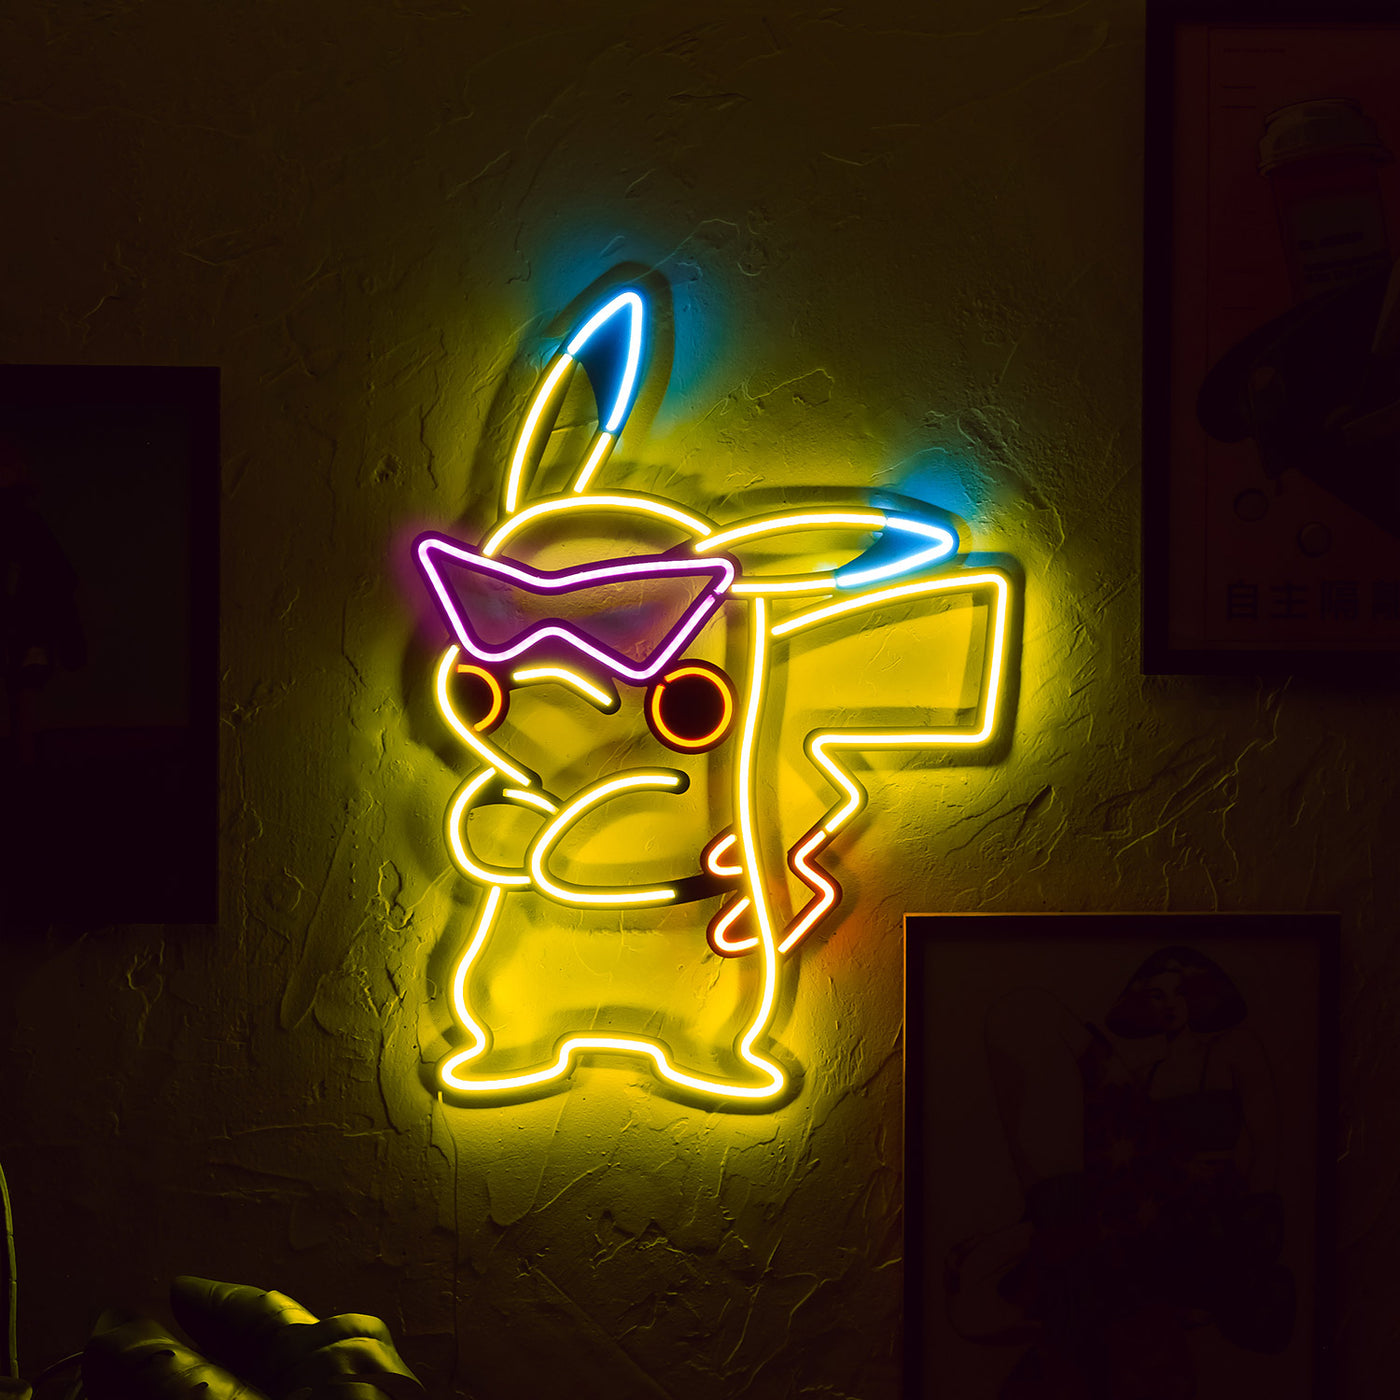 Arte de pared de neón inspirado en Pikachu 